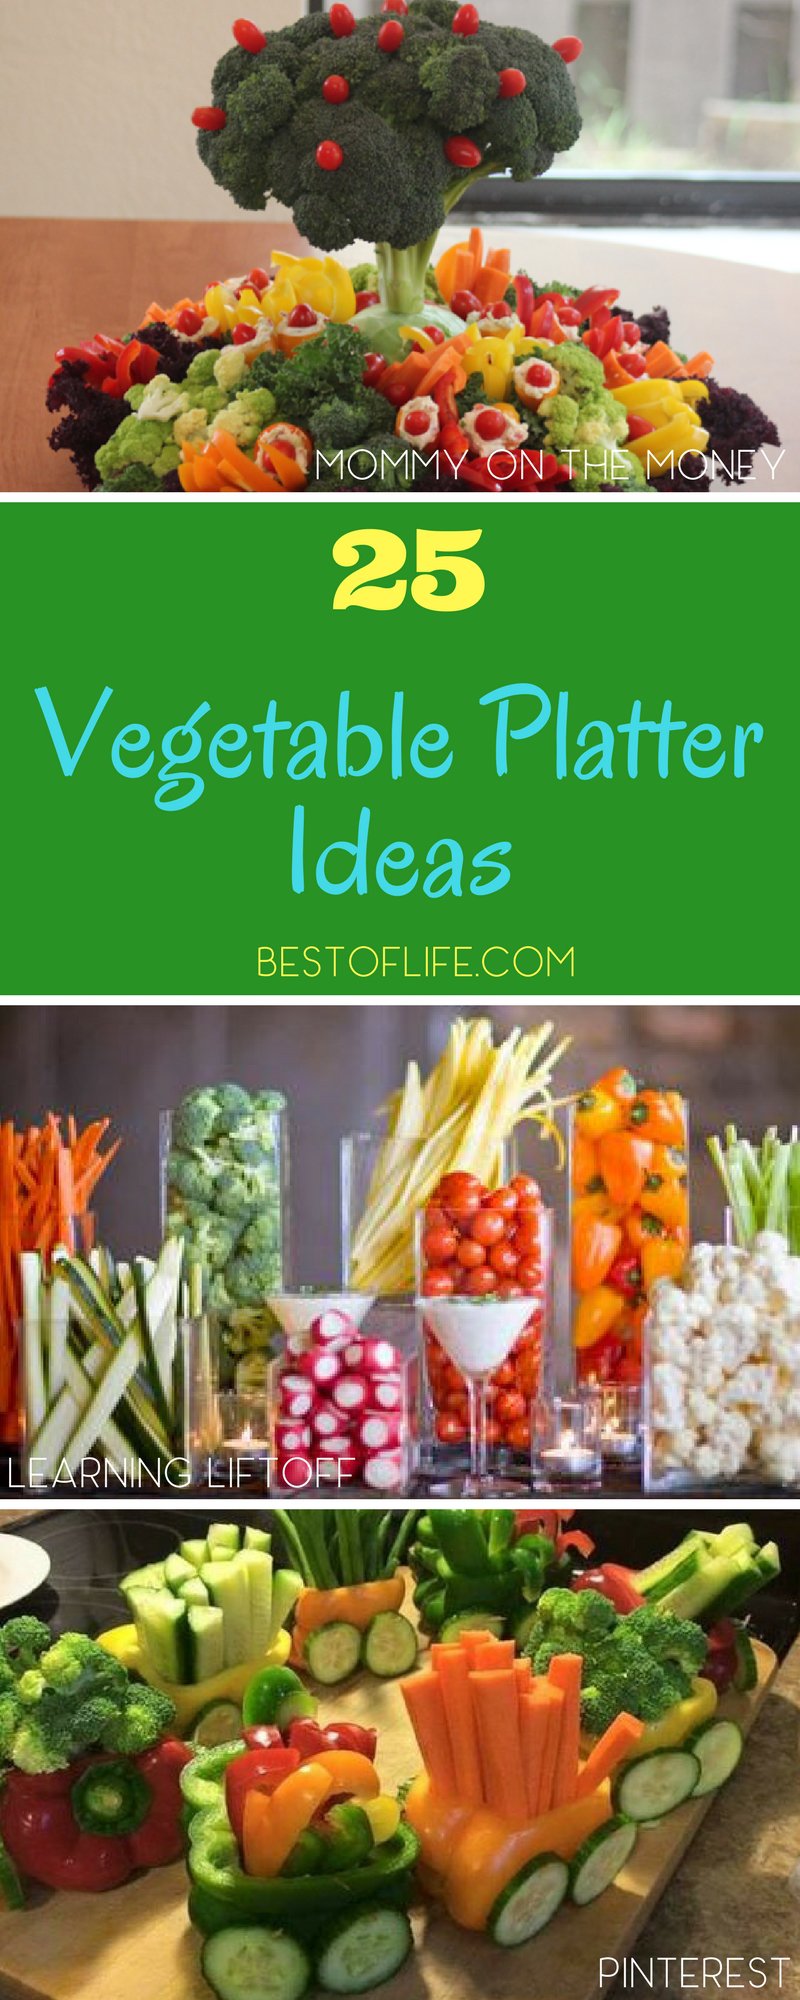 veggie platters for parties